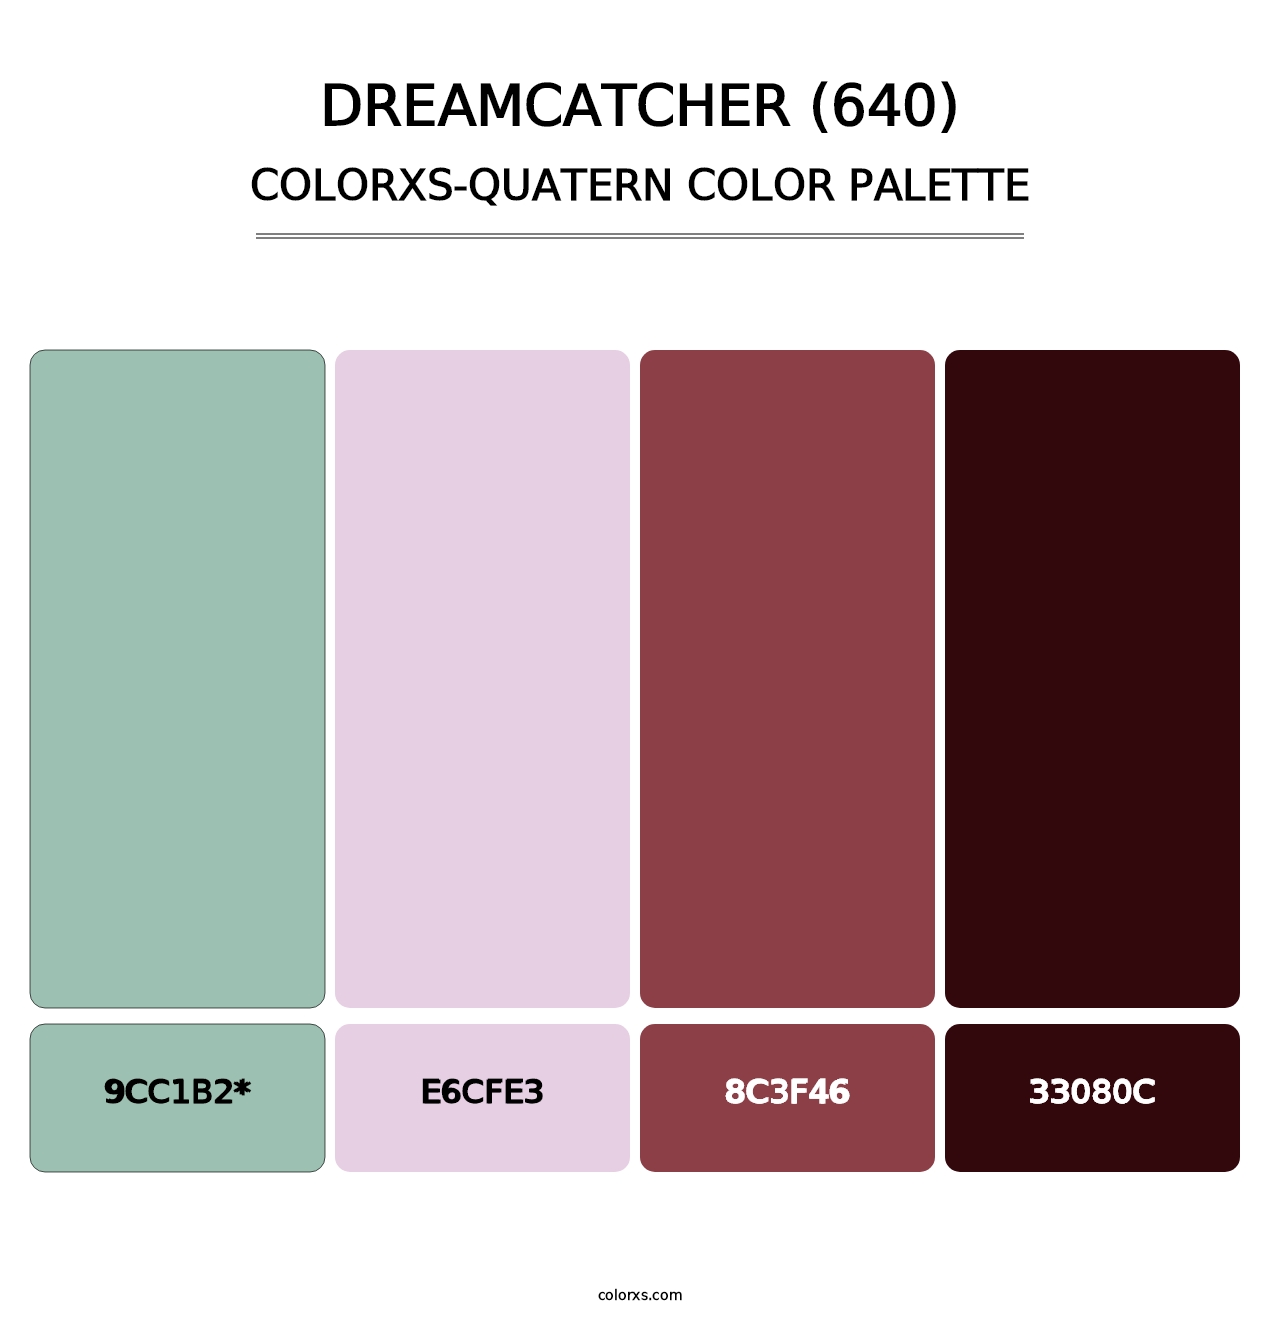 Dreamcatcher (640) - Colorxs Quatern Palette